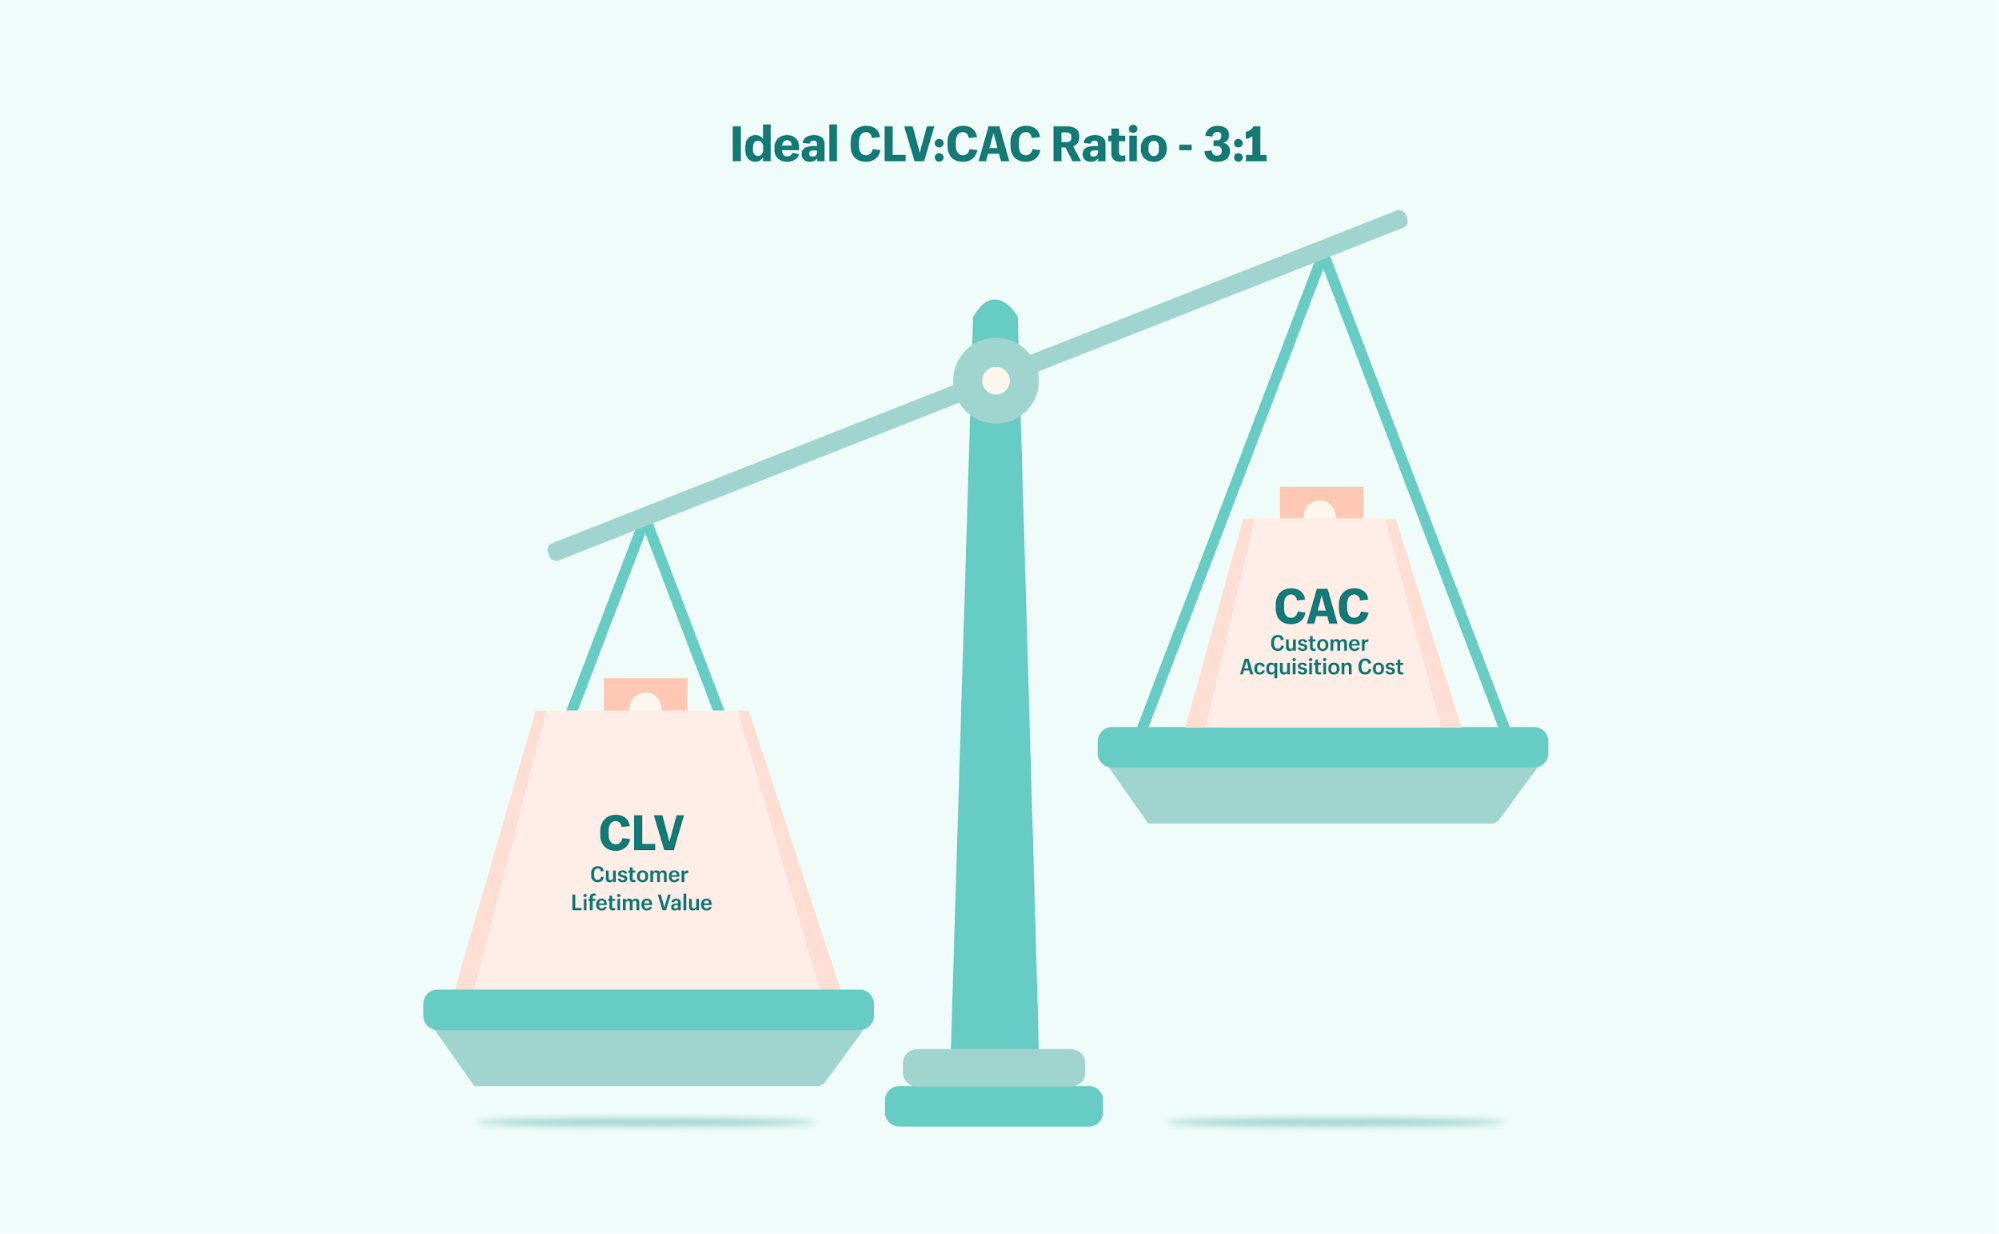 Das ideale Verhältnis von CLV zu CAC.